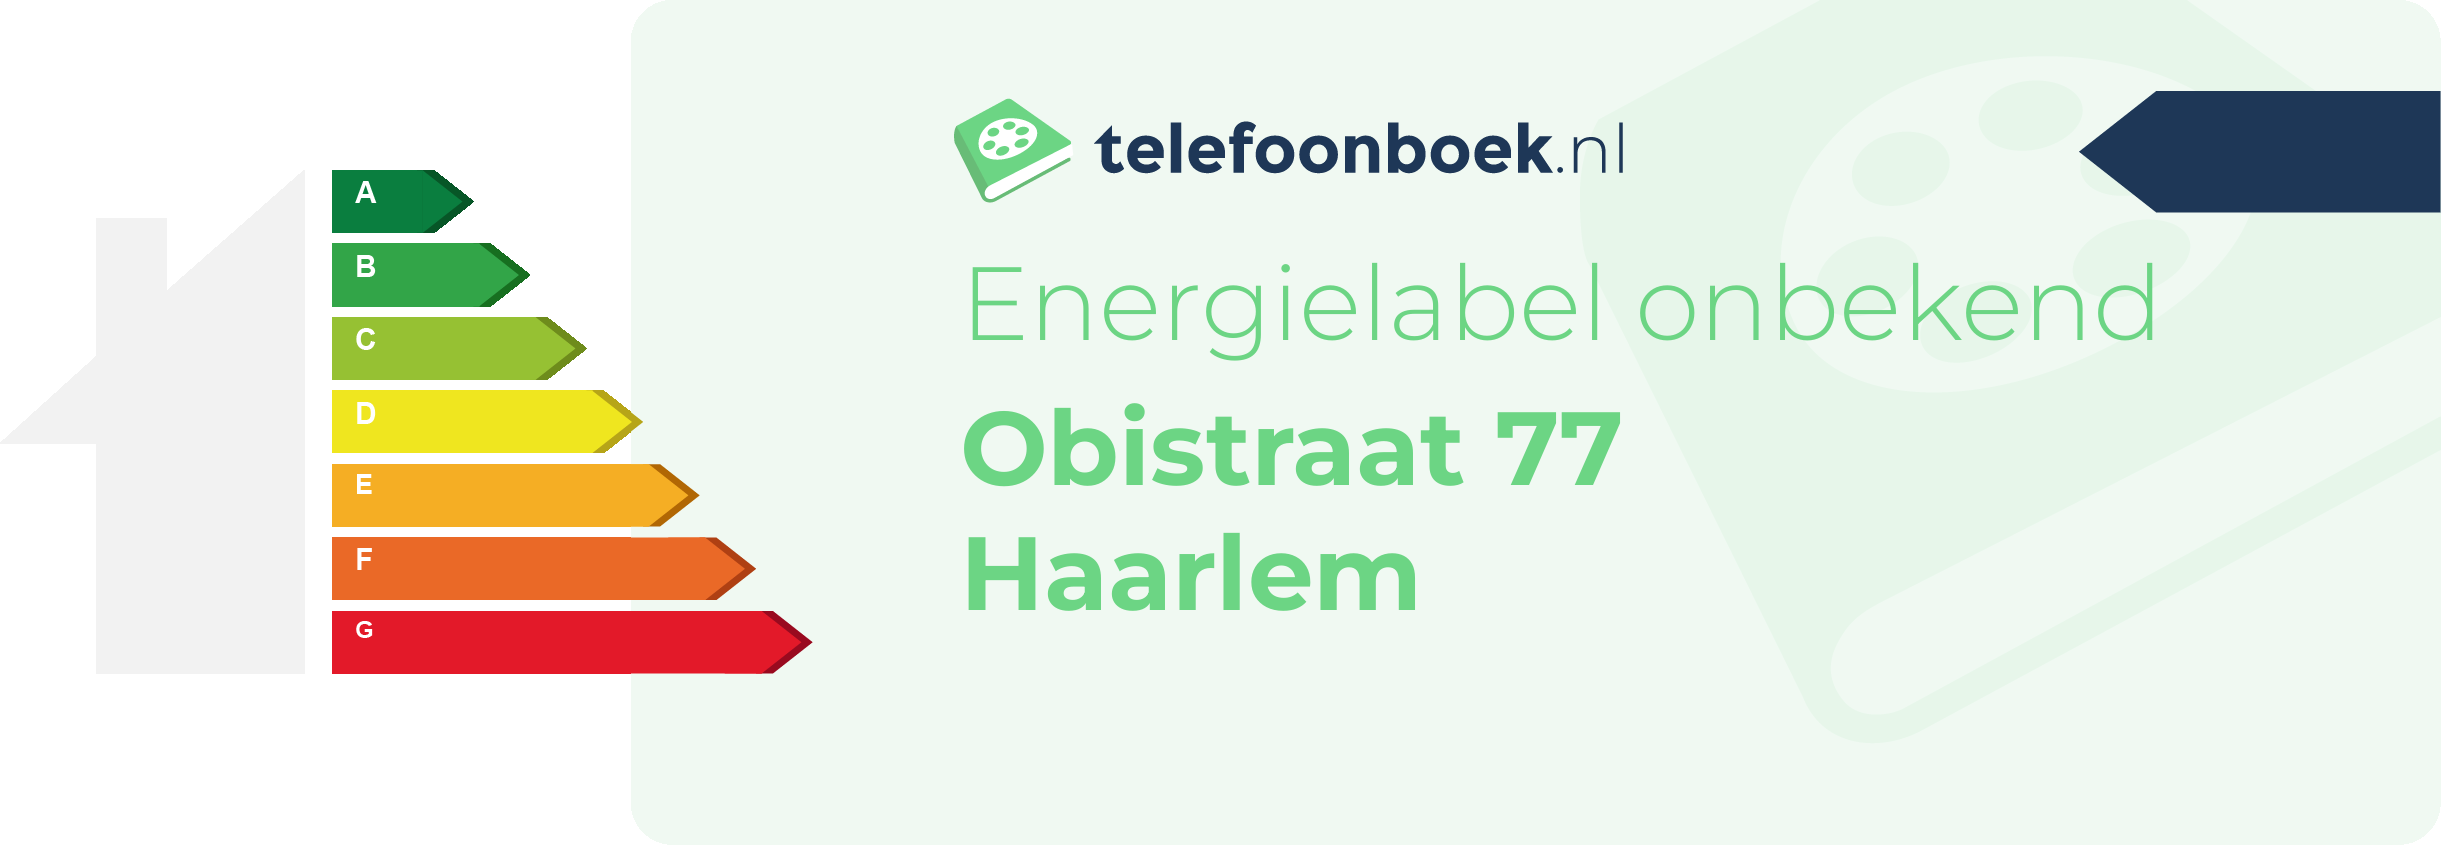 Energielabel Obistraat 77 Haarlem